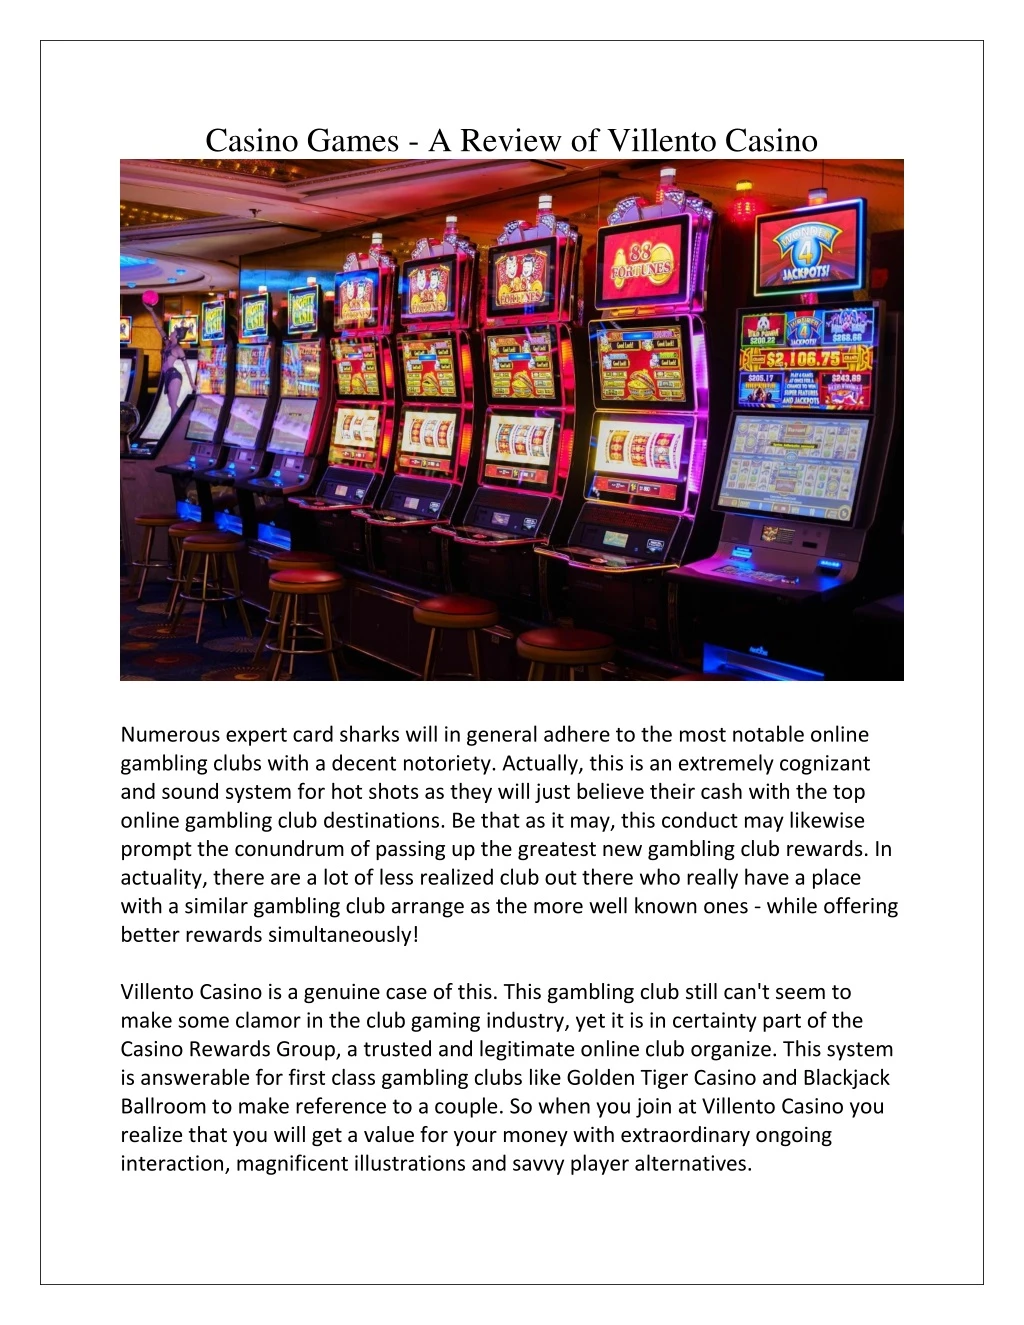 casino games a review of villento casino